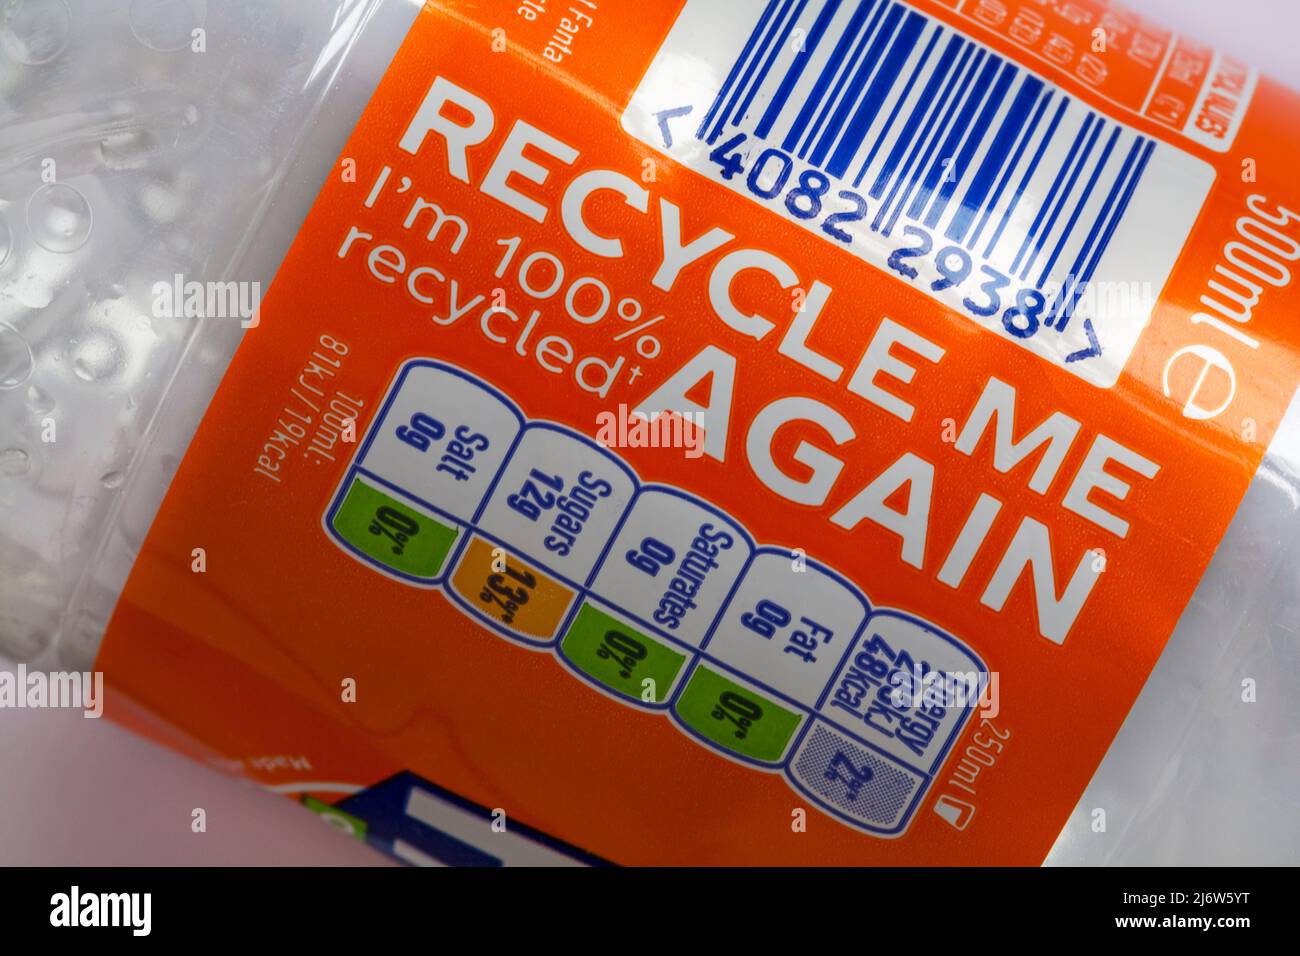 Ricicli sono riciclato al 100% di nuovo - dettaglio su bottiglia di Fanta Orange drink Foto Stock